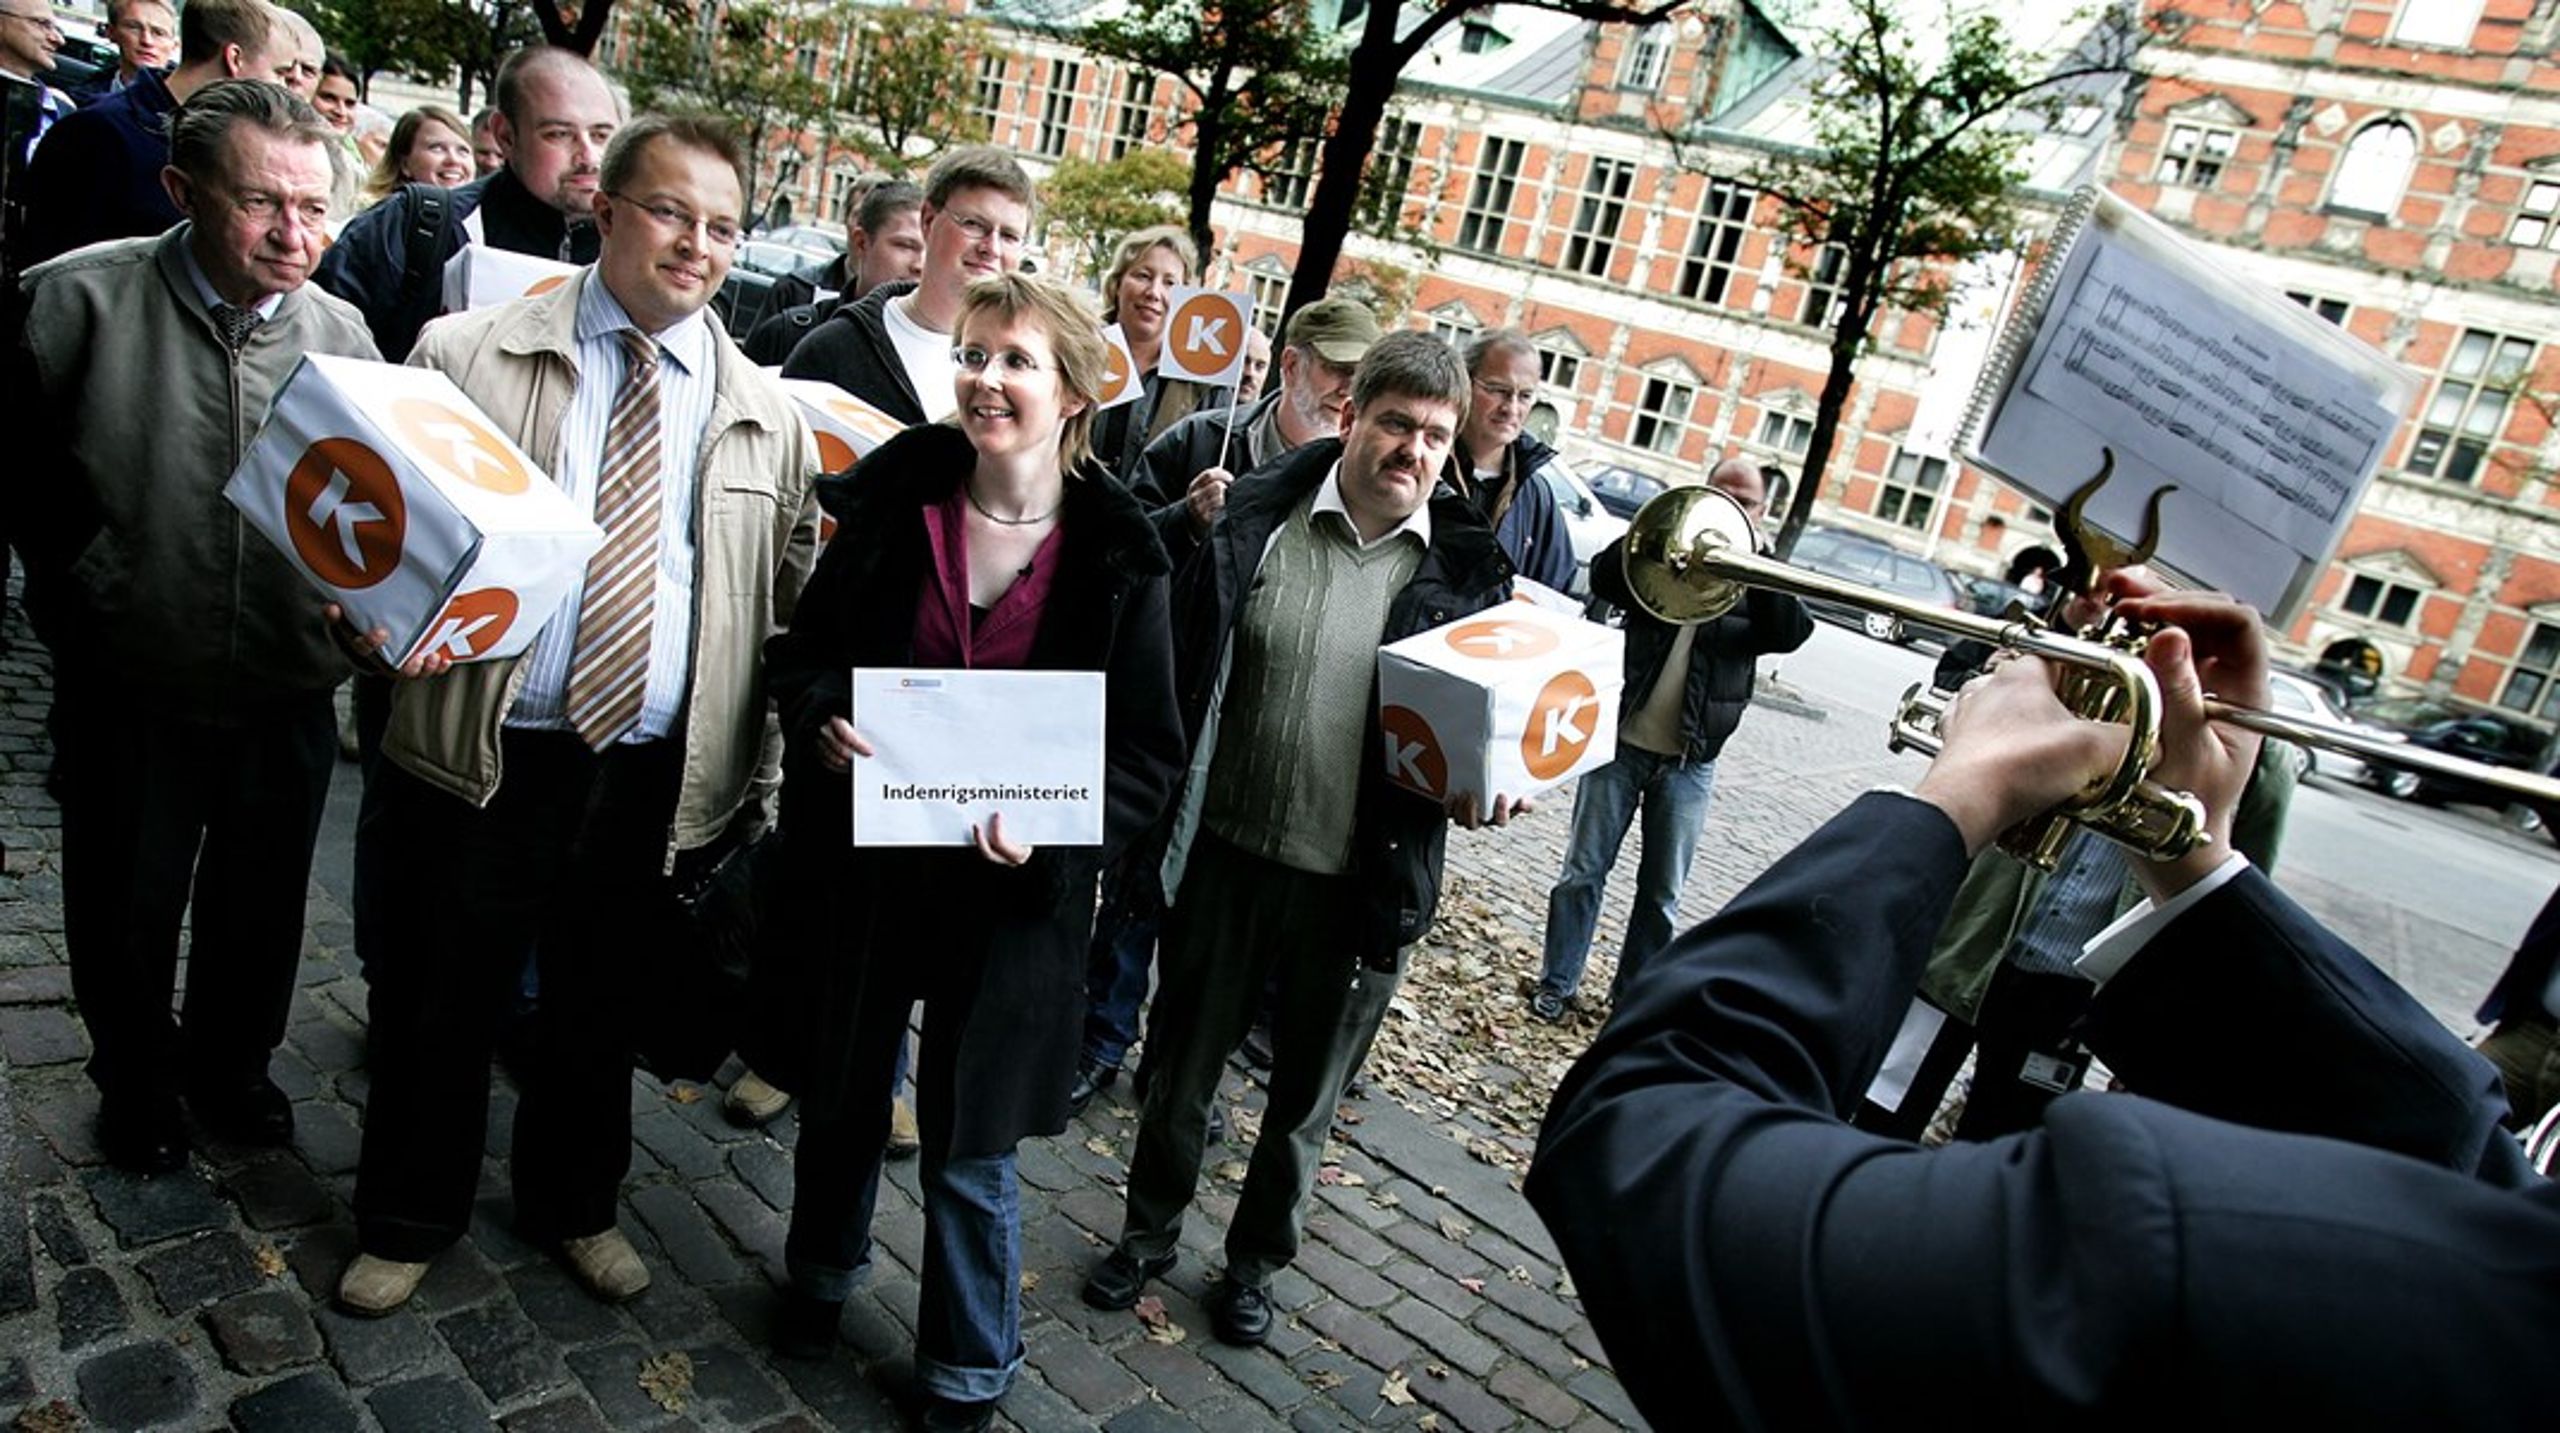 Marianne Karlsmose og hendes partifæller afleverer underskrifter til Indenrigsministeriet i oktober 2005. Også dengang var Marianne Karlsmose formand for Kristendemokraterne.&nbsp;